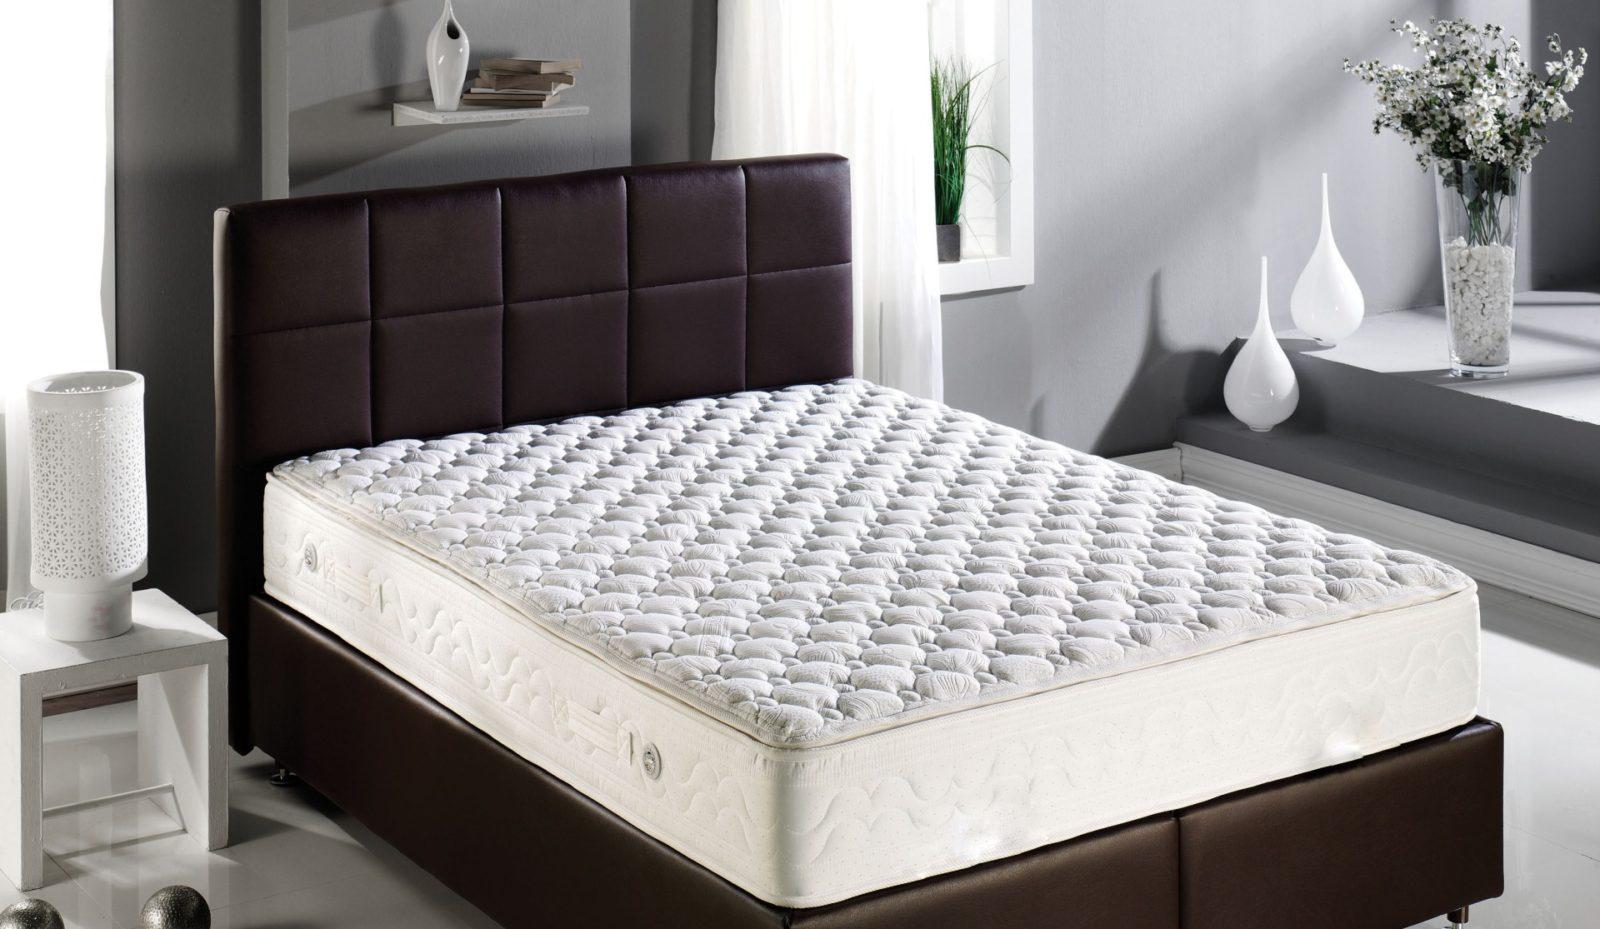 Как выбрать матрас для двуспальной кровати?